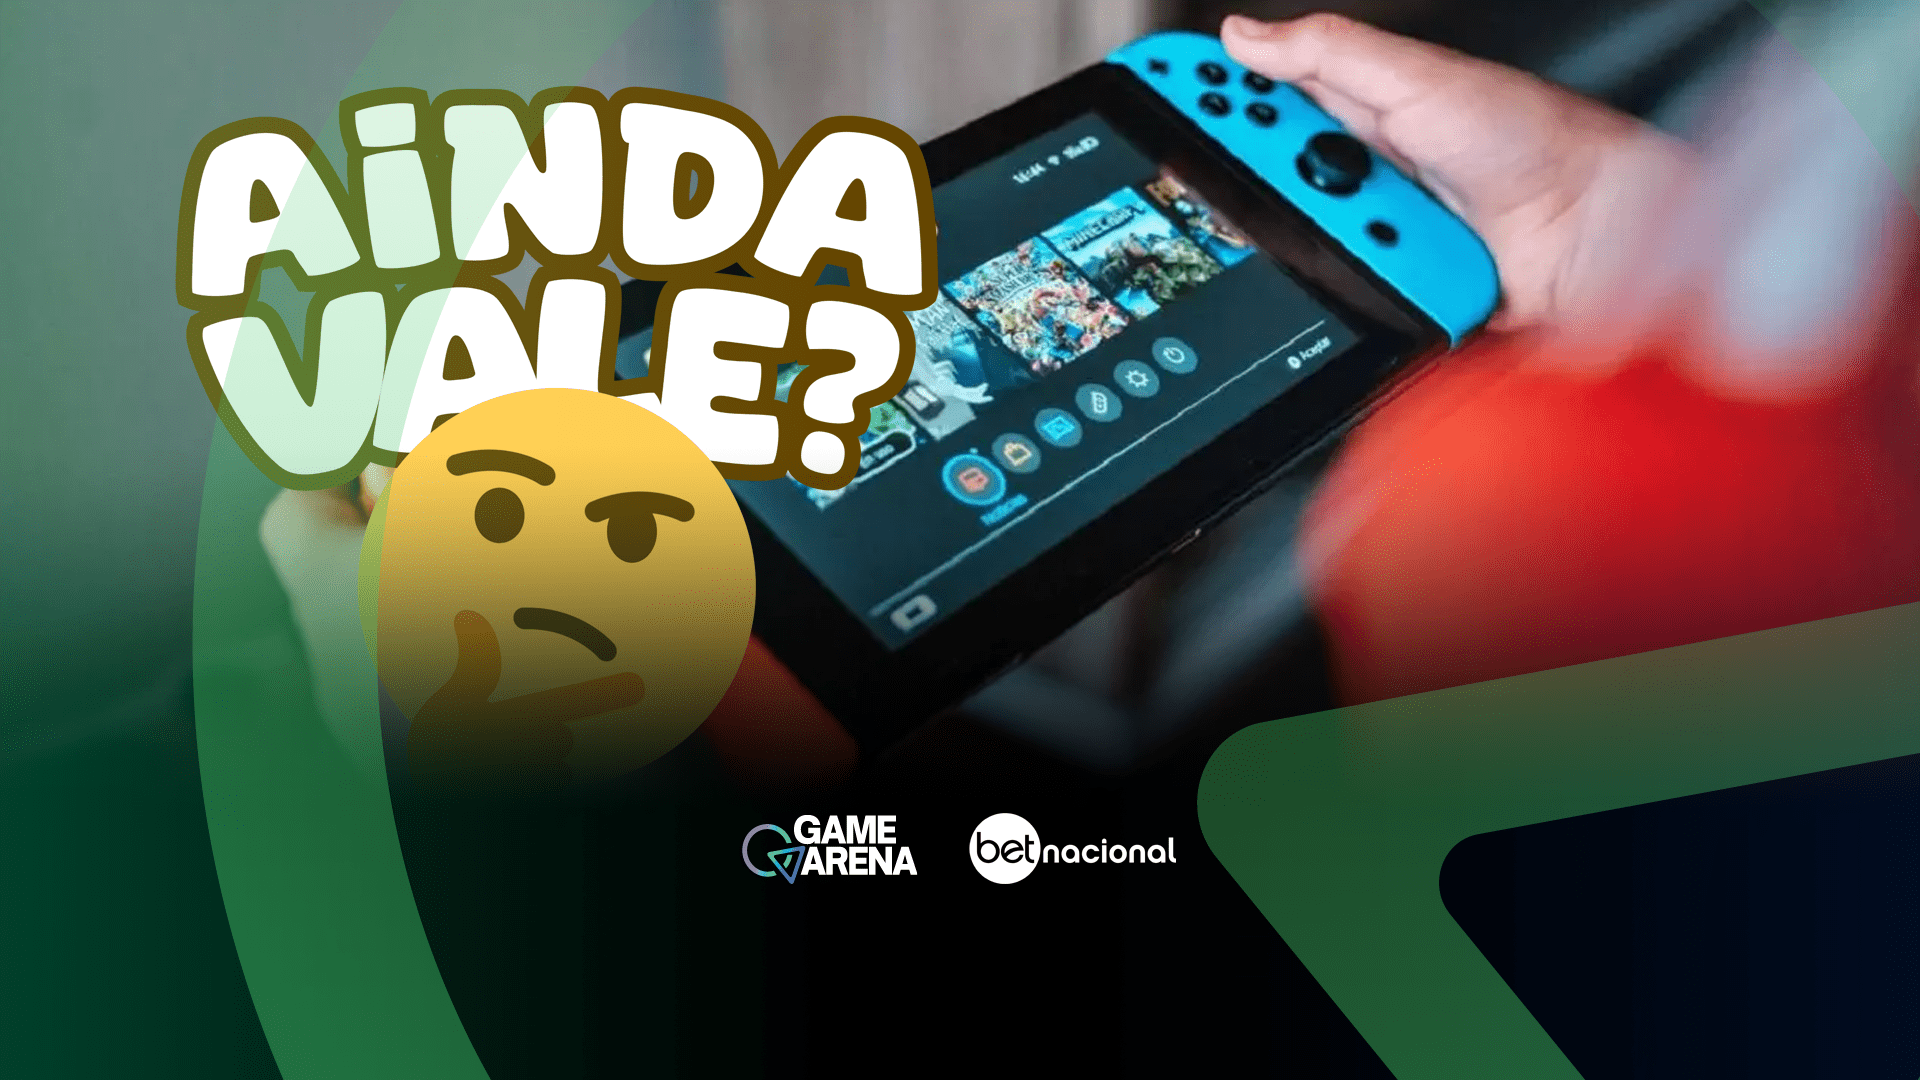 Nintendo Switch chegou oficialmente ao Brasil há quase seis meses